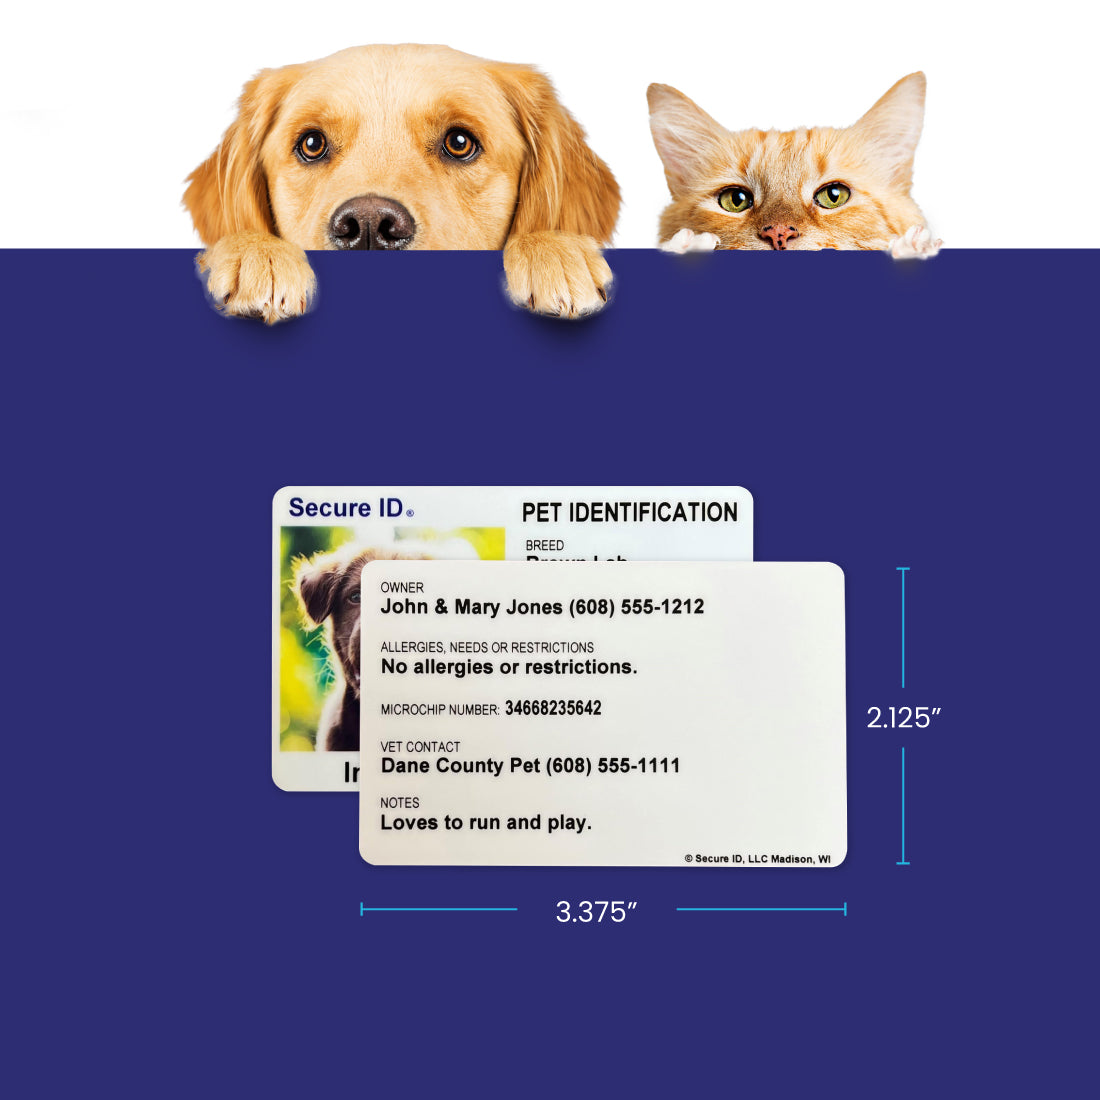 Pet ID Card